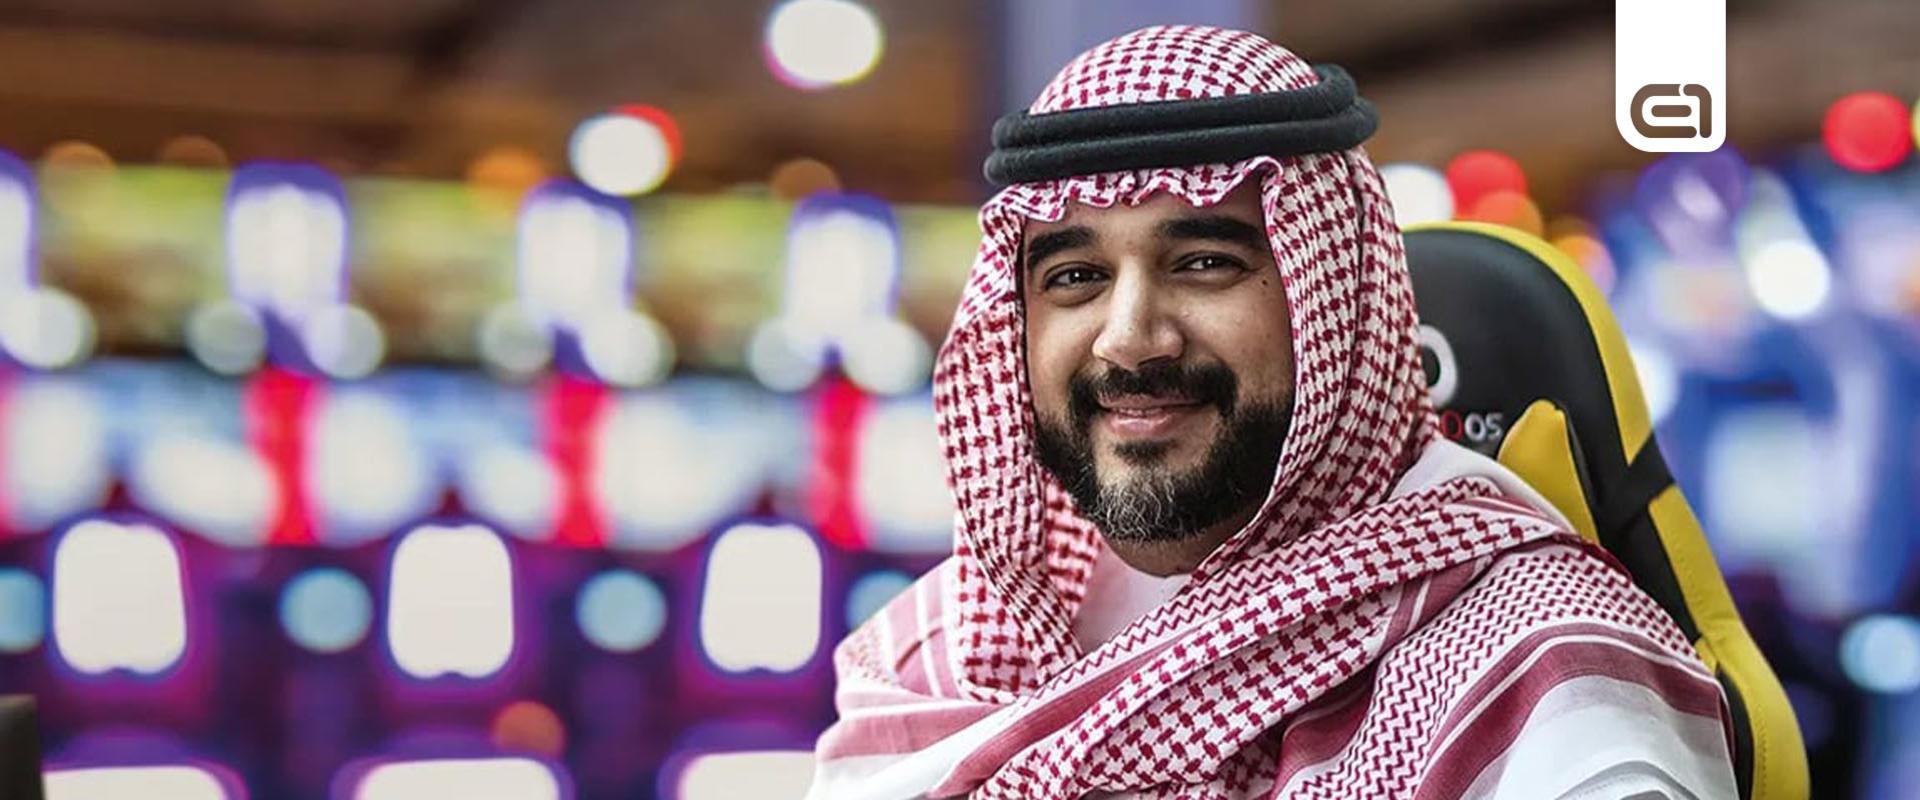 Egy szaúd-arábiai herceg lett az IESF új elnöke